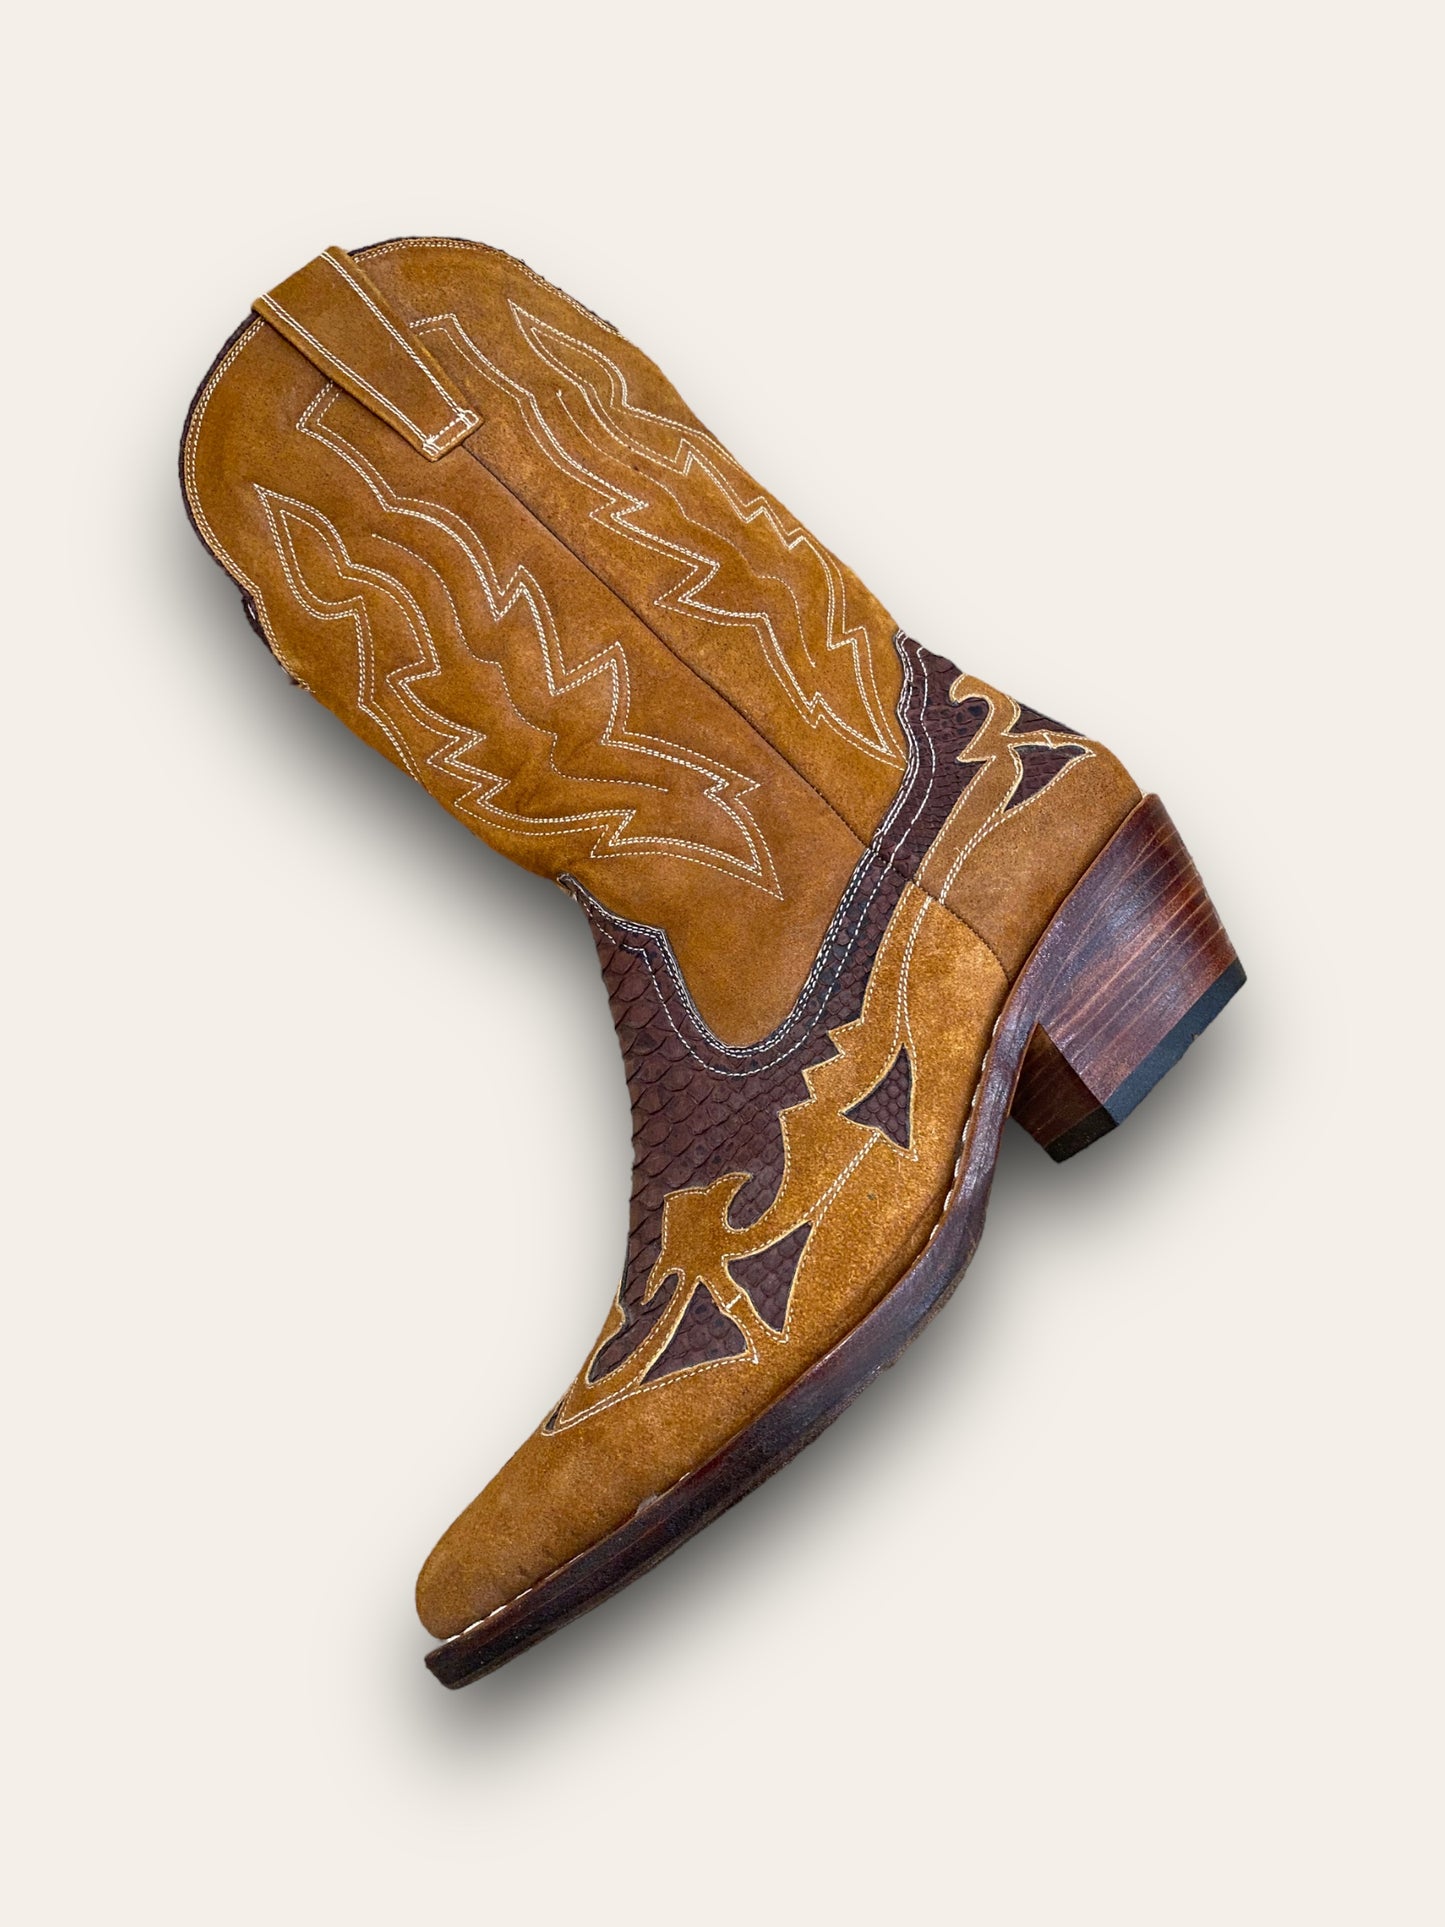 Texano limited edition cuoio e legno